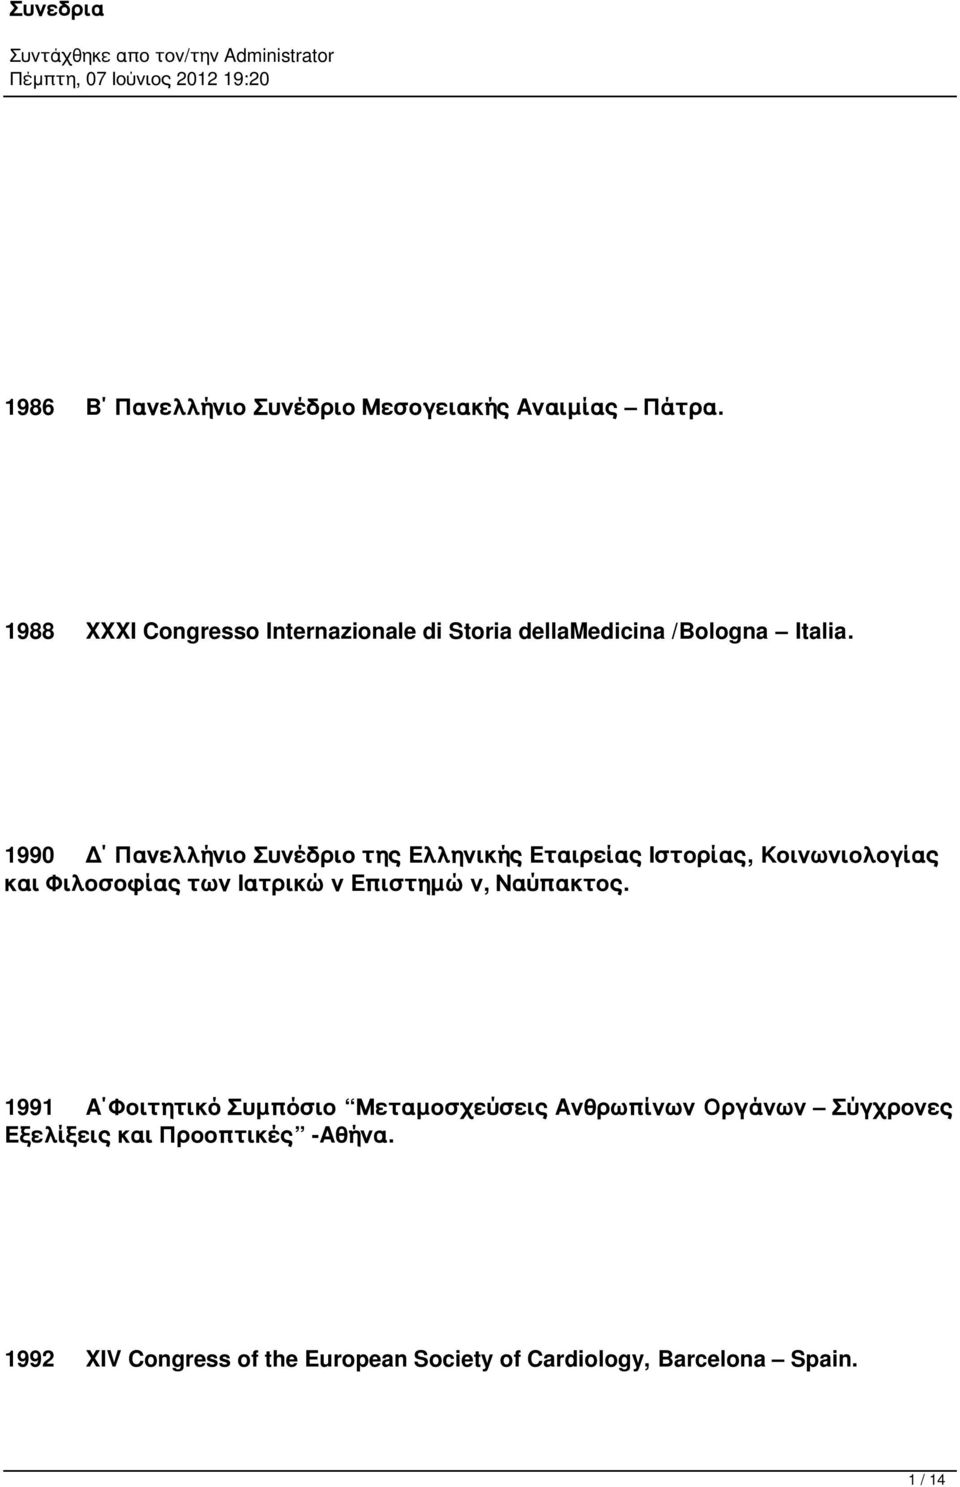 1990 Δ Πανελλήνιο Συνέδριο της Ελληνικής Εταιρείας Ιστορίας, Κοινωνιολογίας και Φιλοσοφίας των Ιατρικών